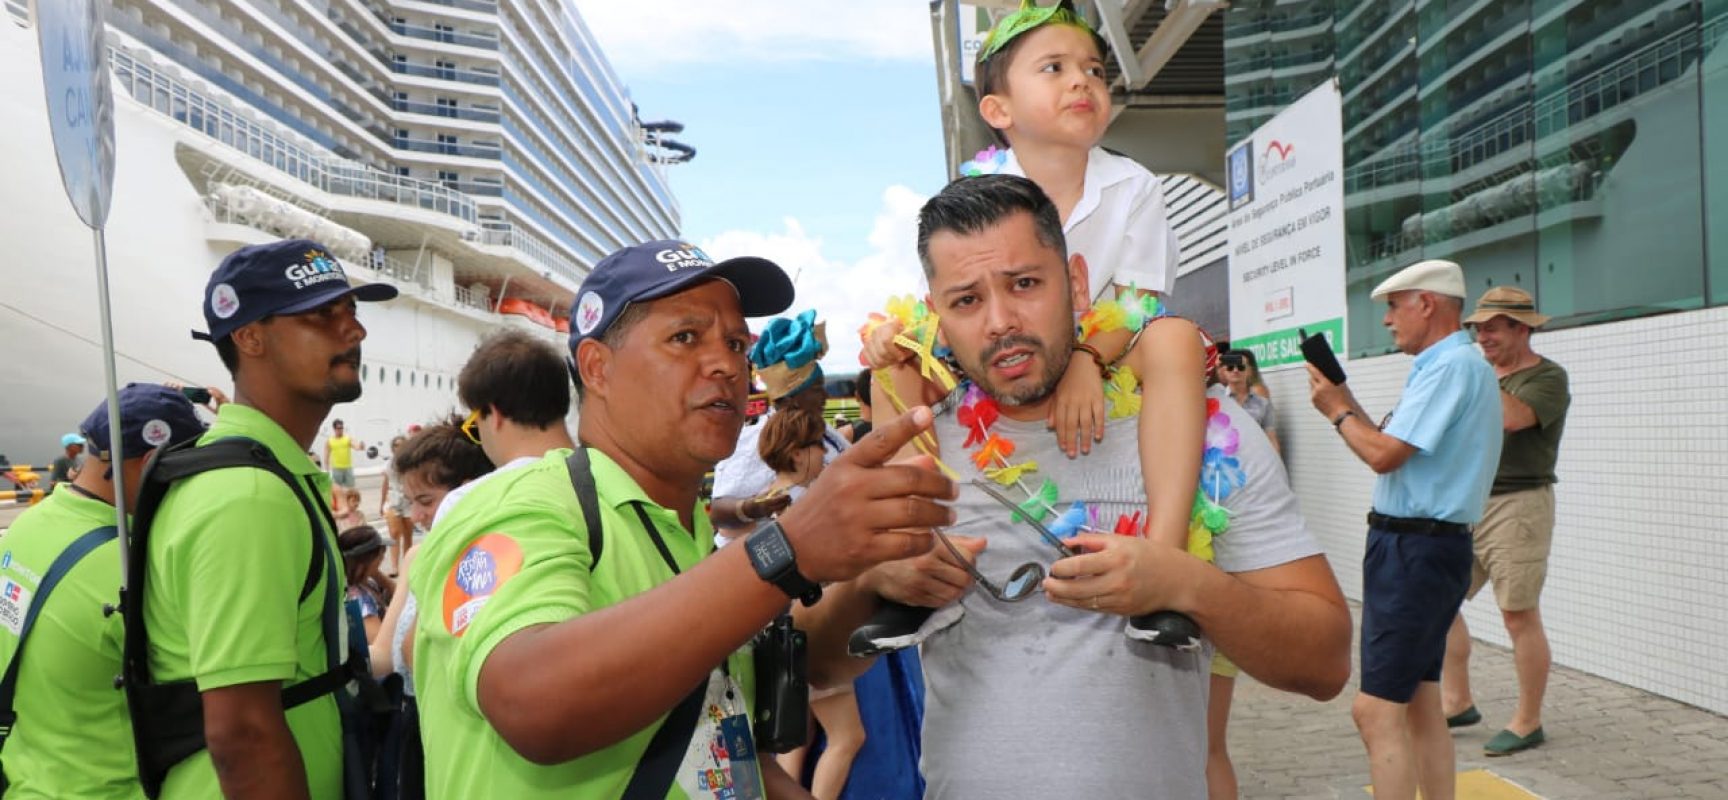 Bahia recebeu 2,3 milhões de visitantes no Carnaval